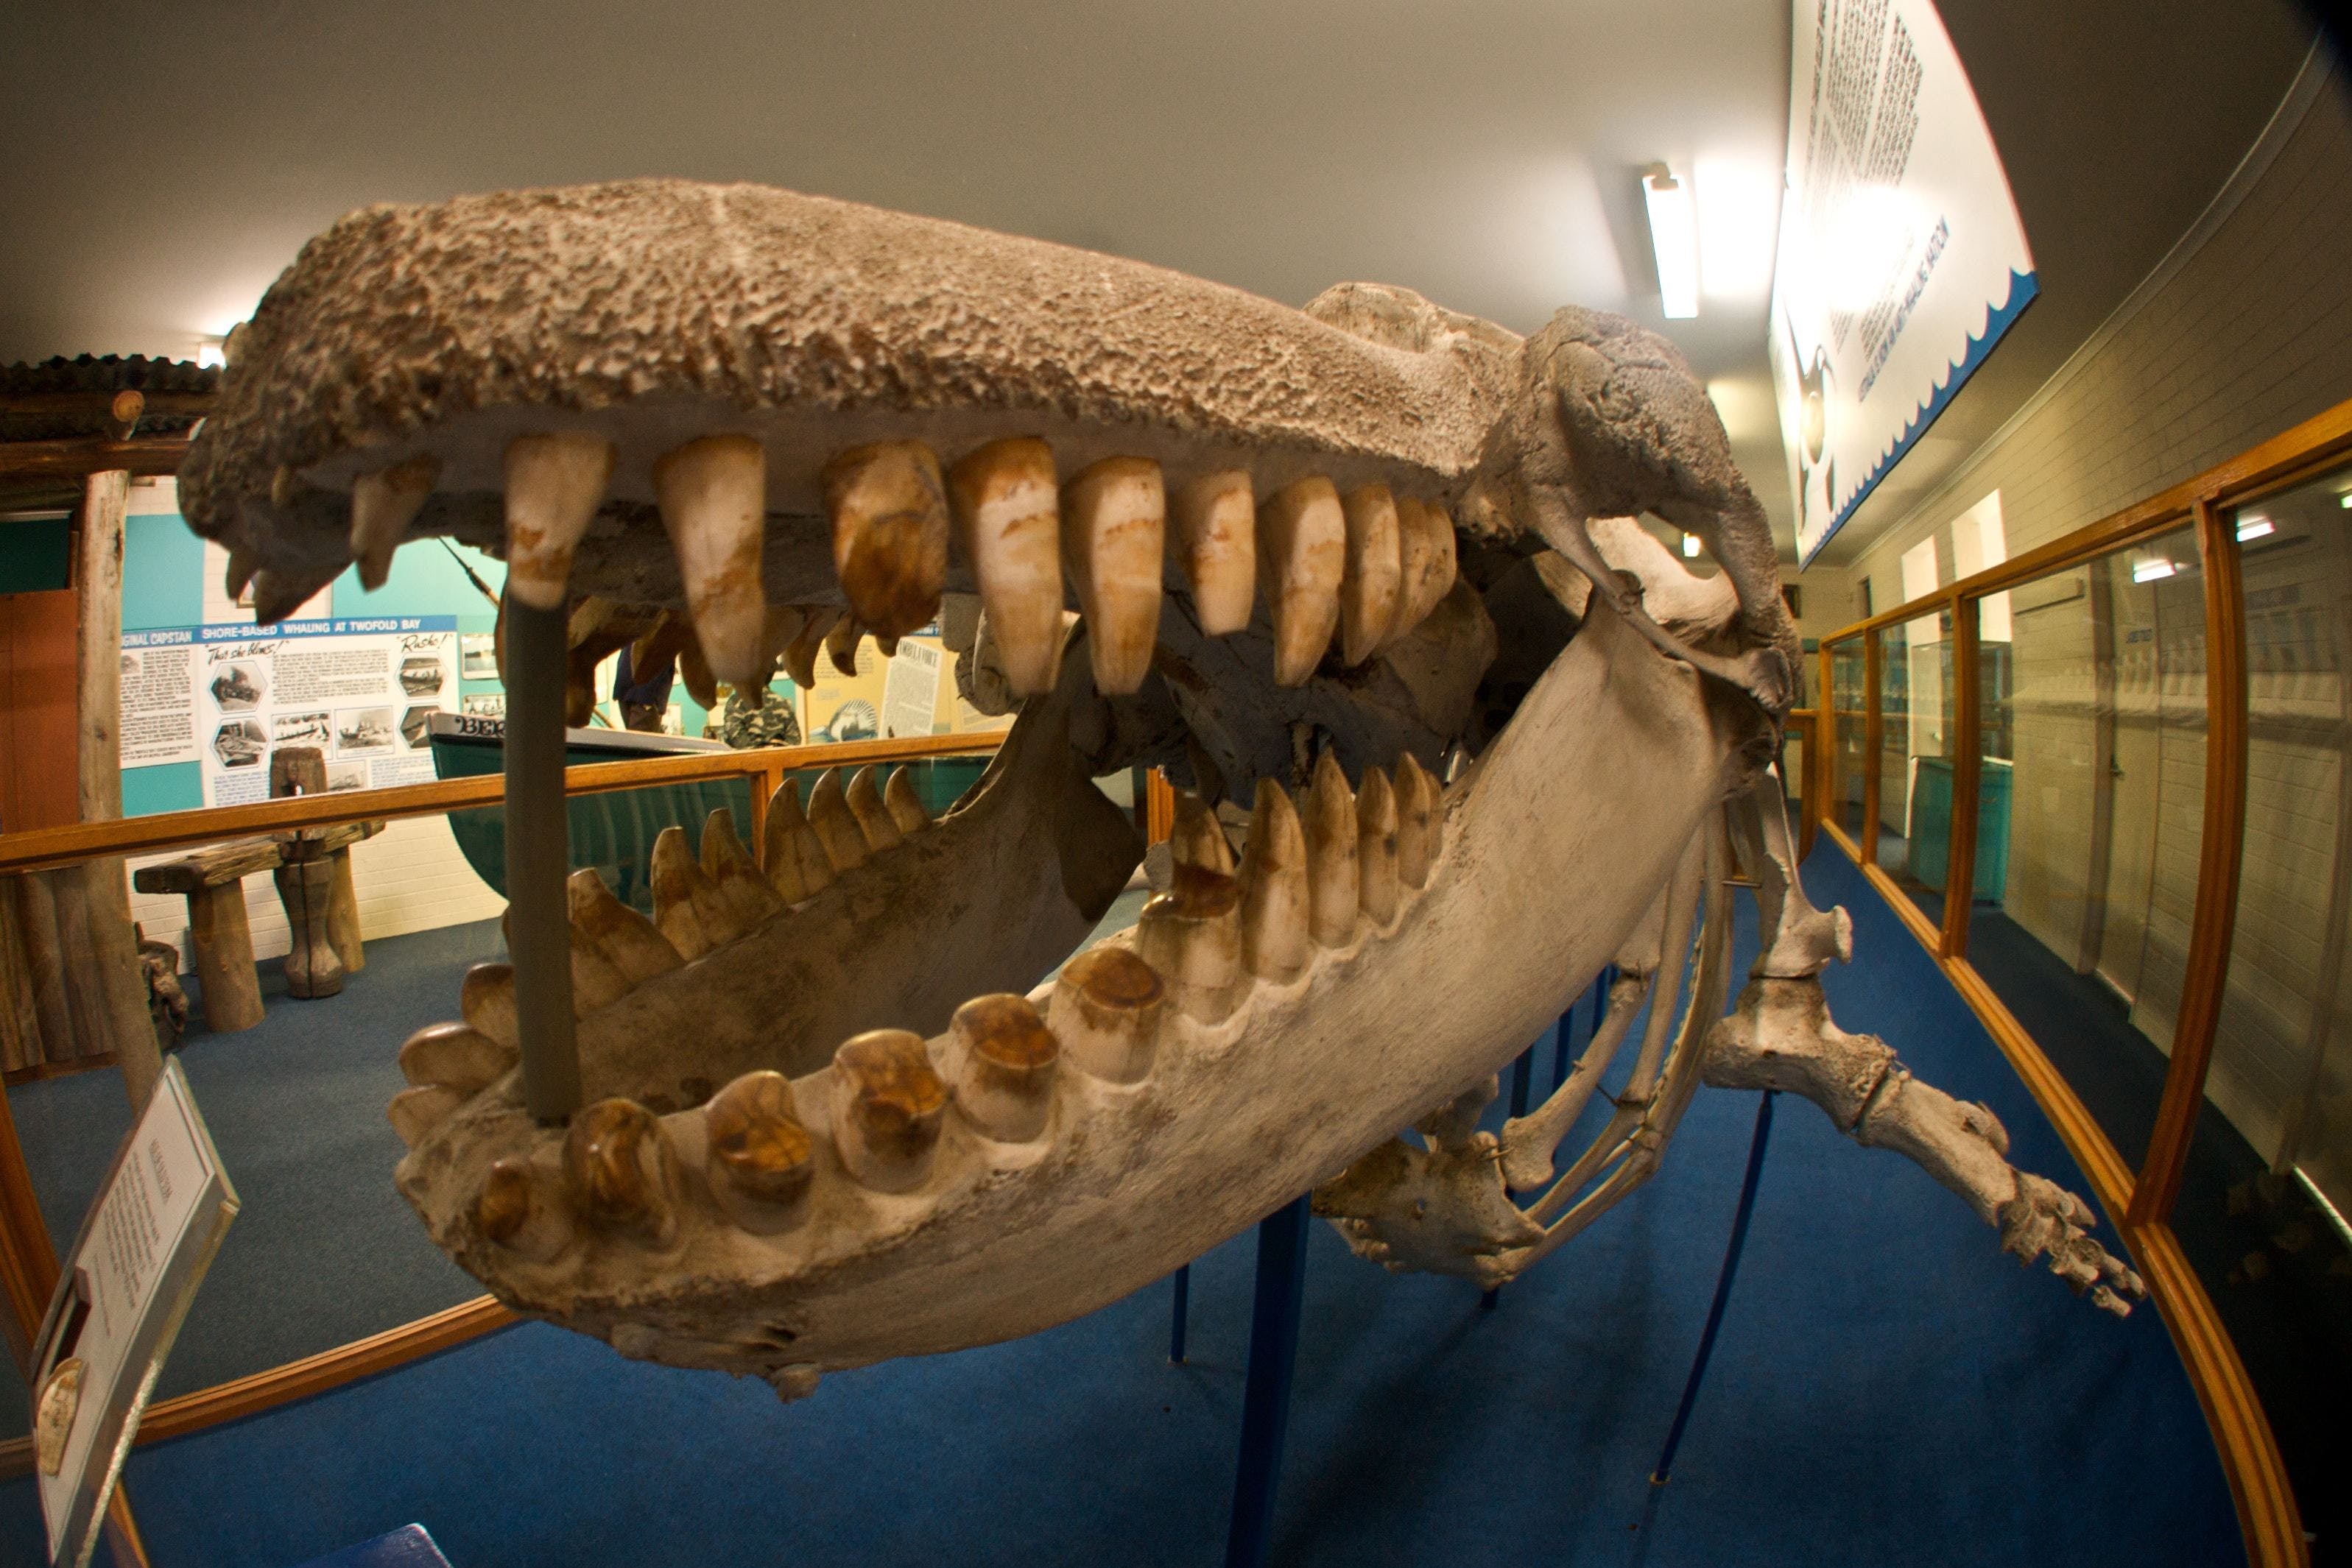 Eden Killer Whale Museum - Accommodation Nelson Bay